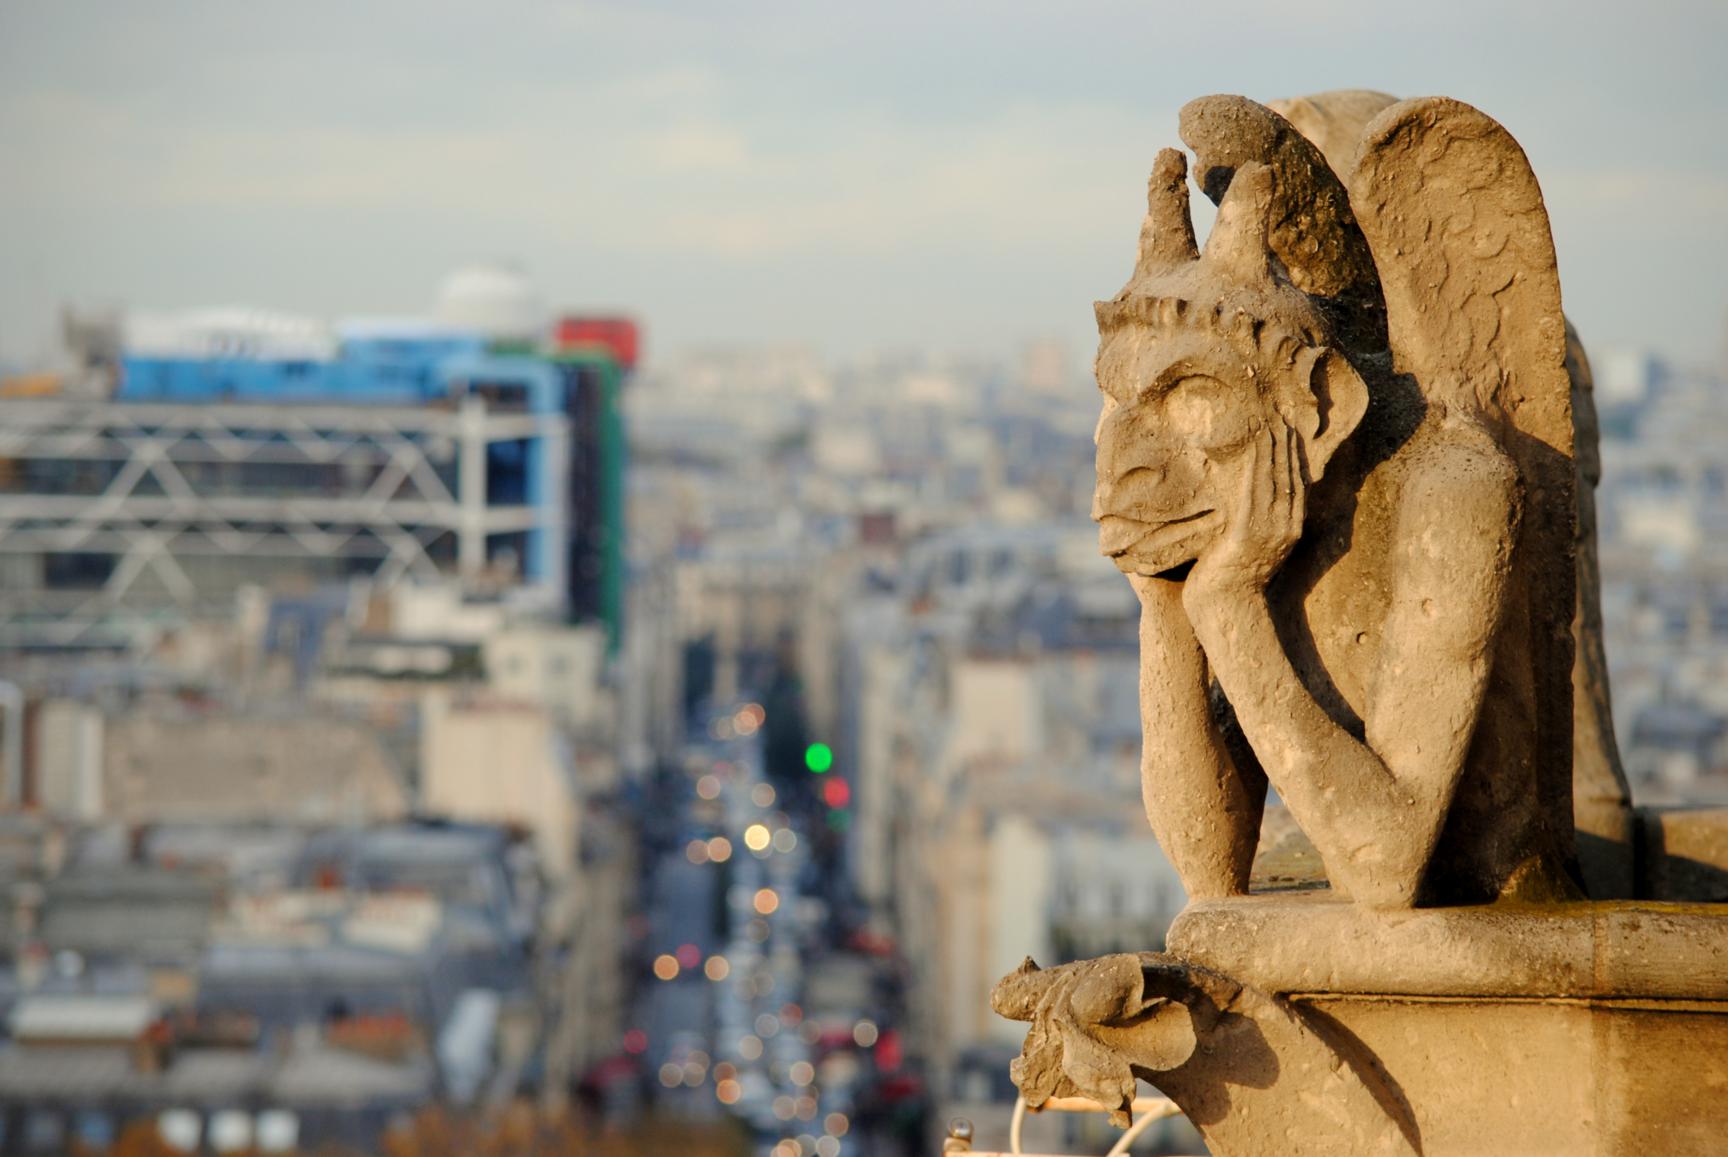 Gárgolas de Notre Dame, Centro Pompidou al fondo. París 2014.